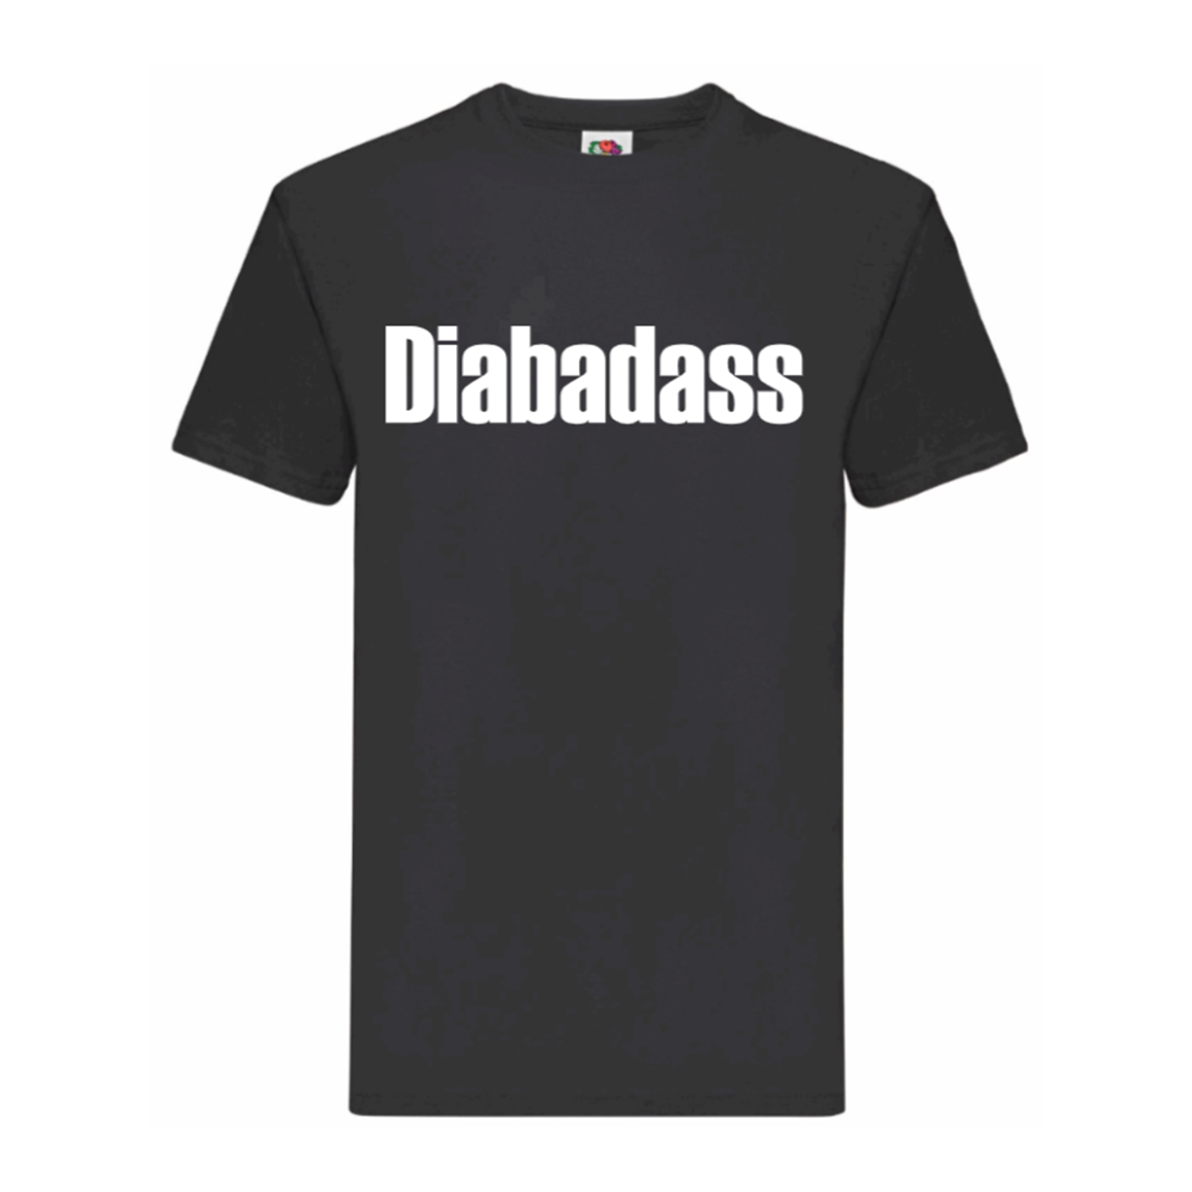 Diabadass T Shirt